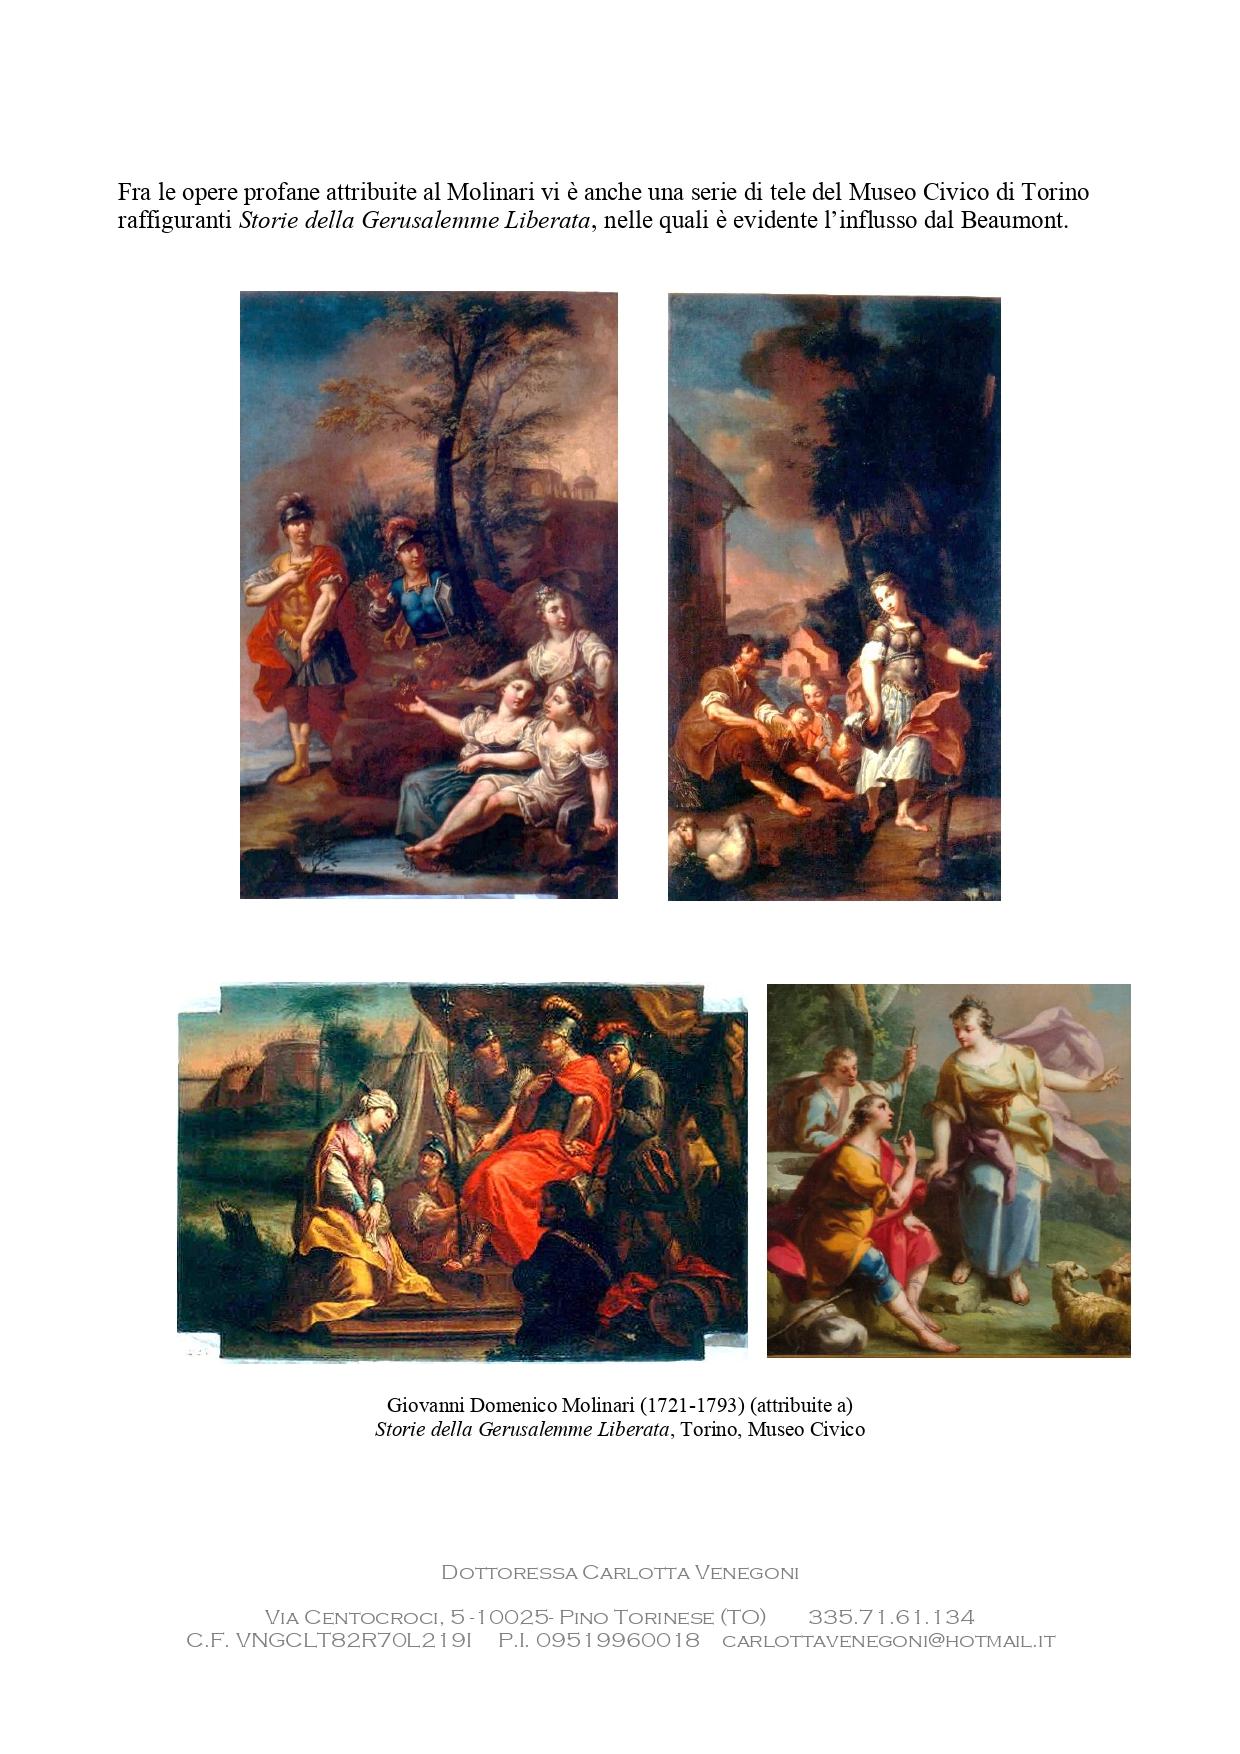 Giovanni Domenico Molinari, Italian 18th Century Oil on Canvas, Biblical Scenes 5